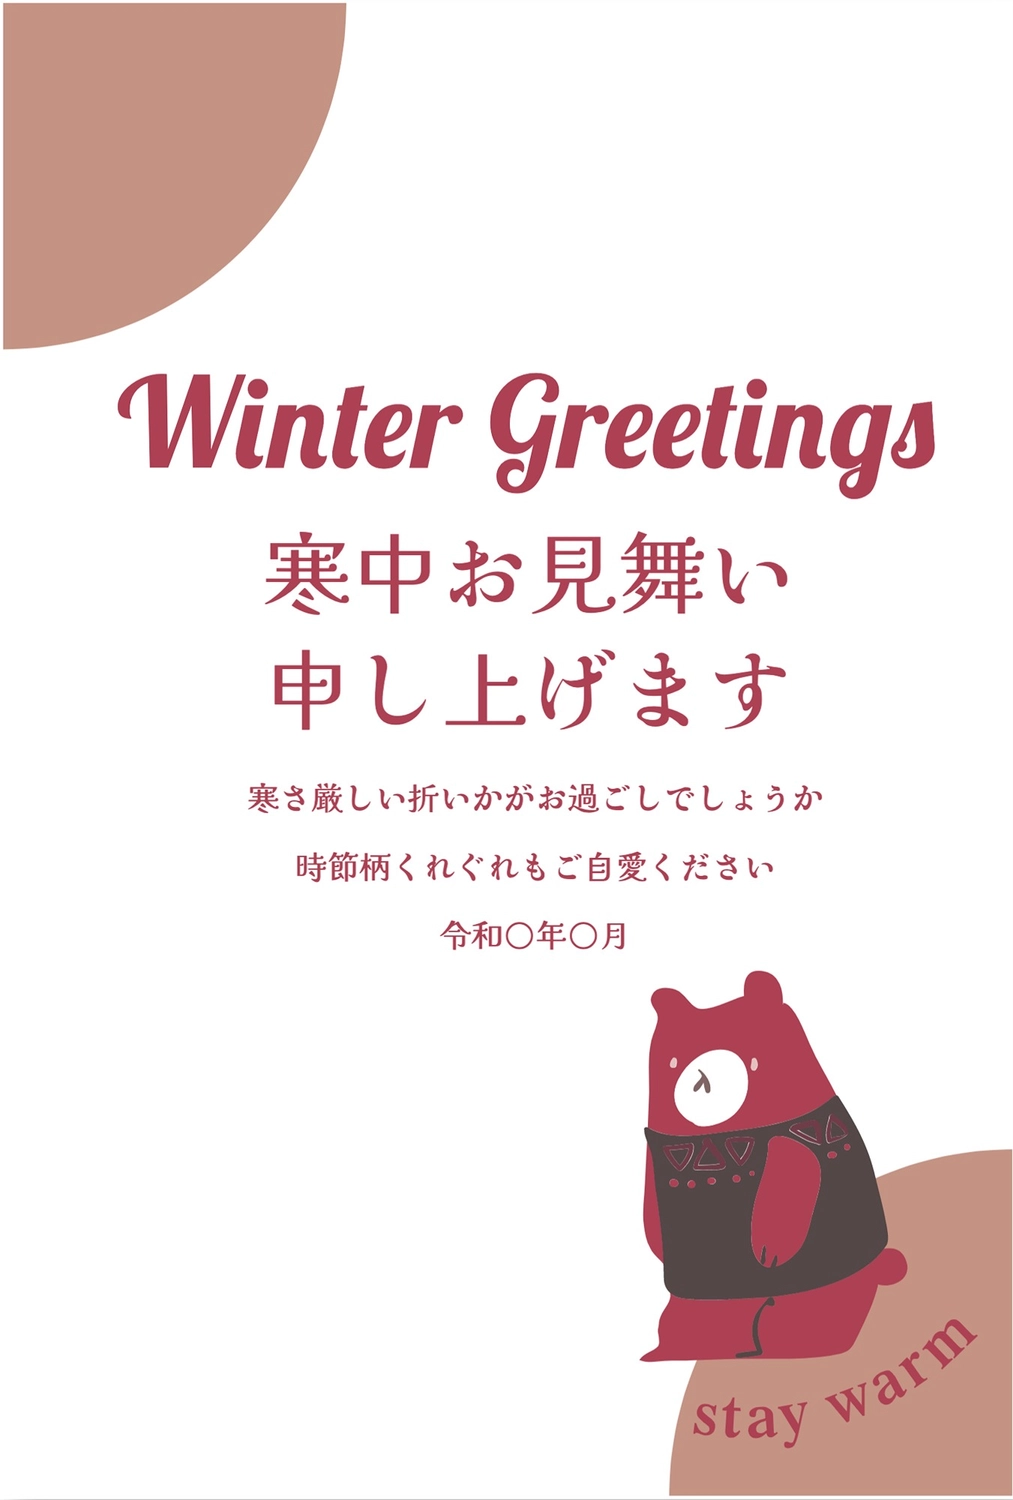 寒中見舞い　くま, Greeting card, Bear, February, Mid-winter Greeting template